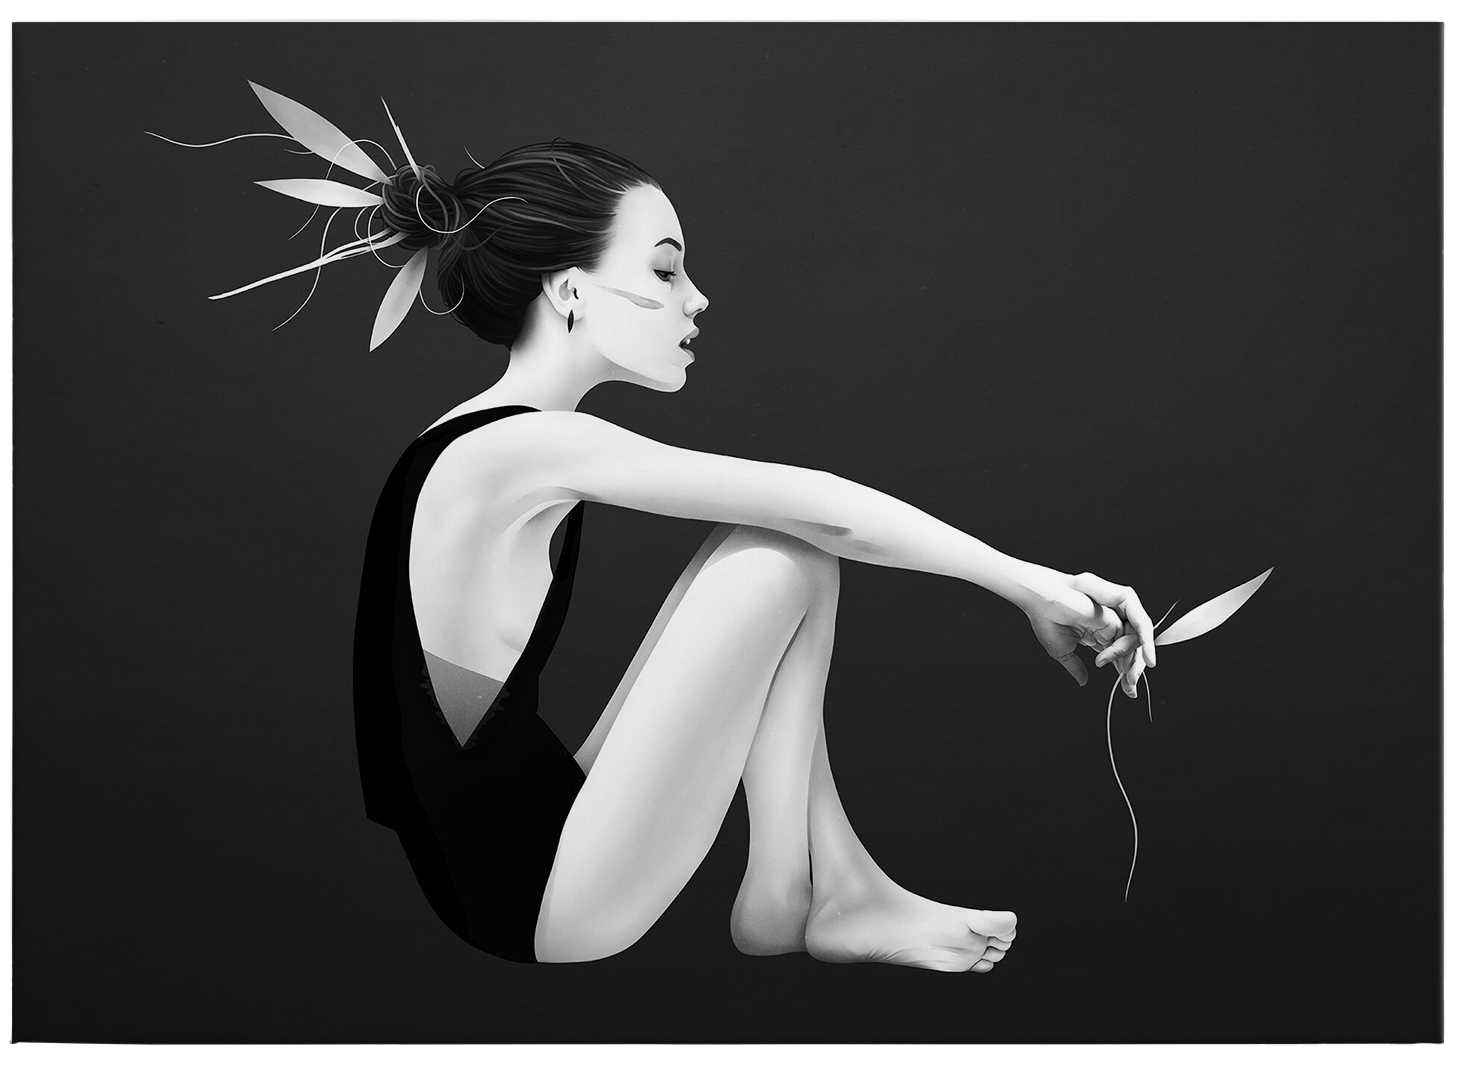             Quadro su tela in bianco e nero "Skyling" con figura di donna - 0,70 m x 0,50 m
        